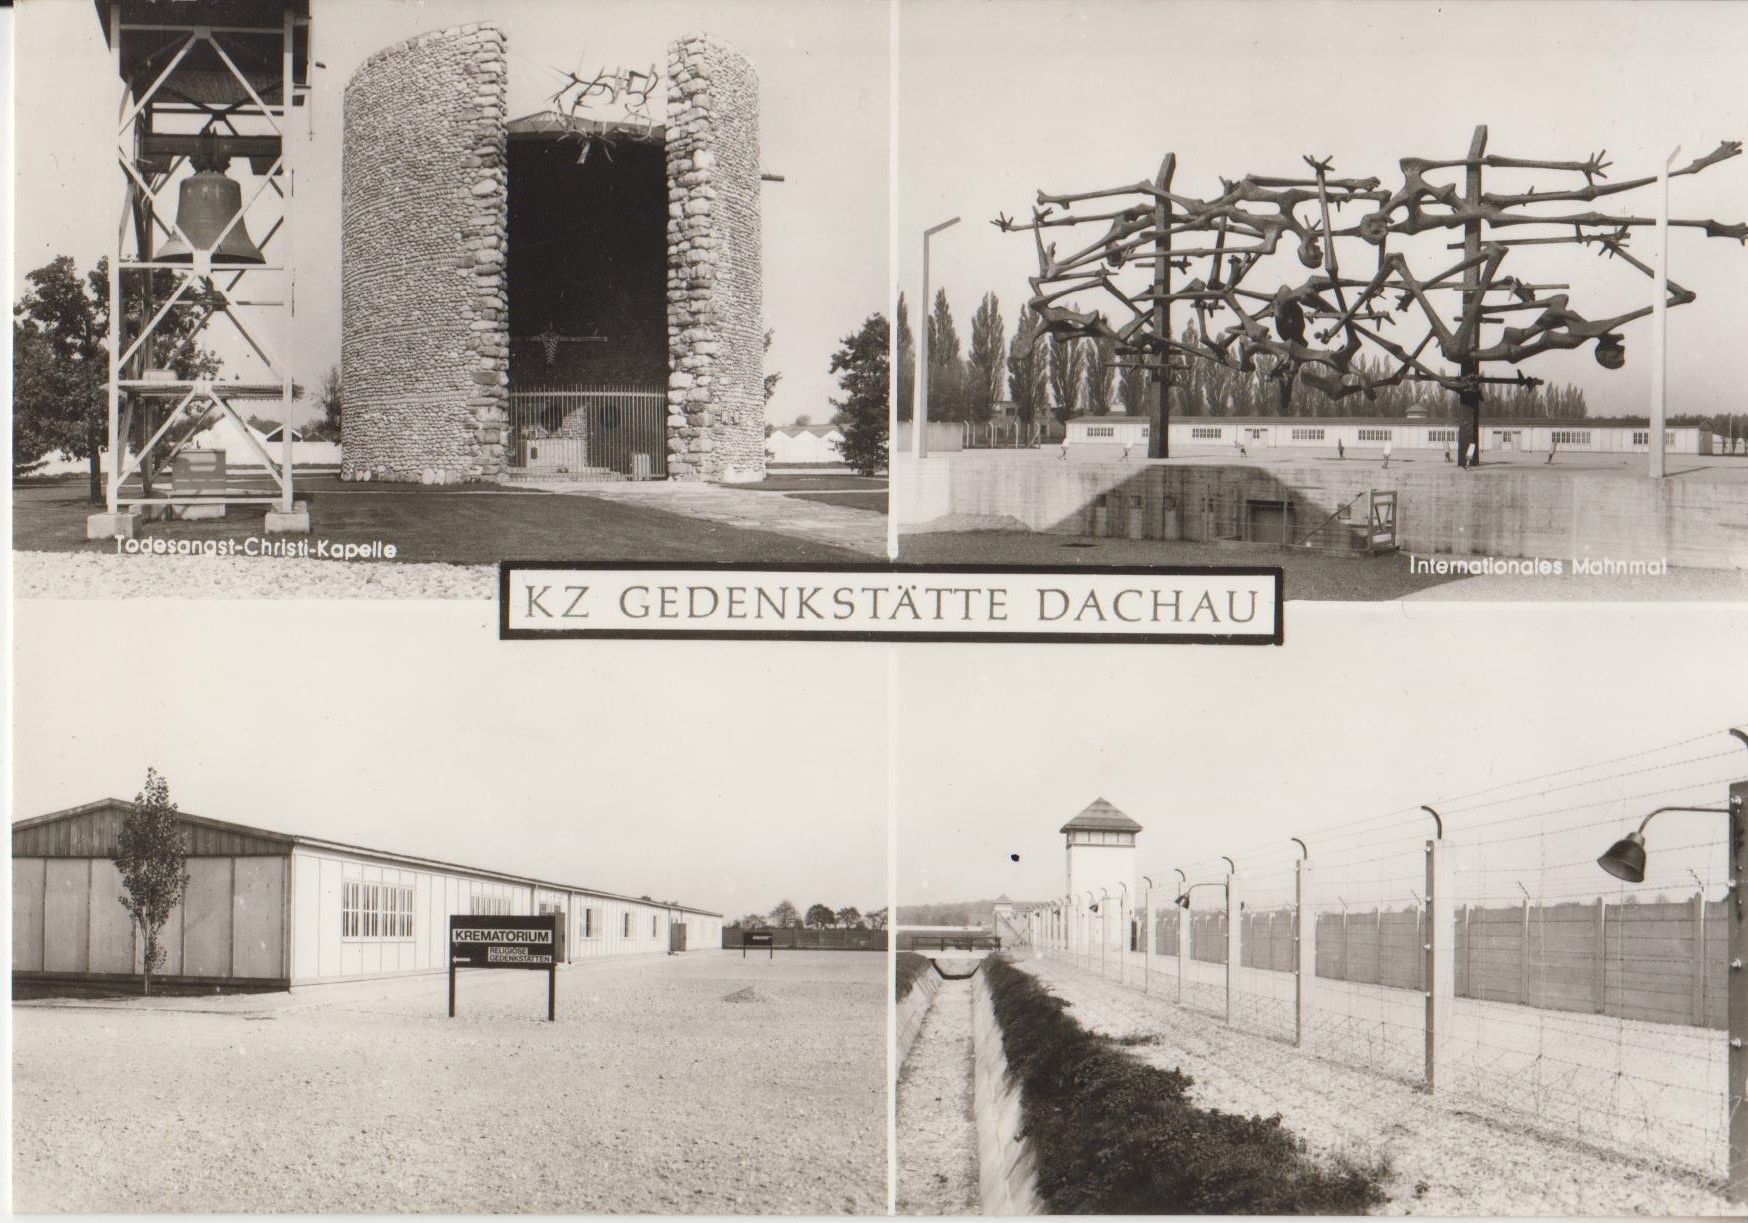 photo taken by me - Dachau postcard